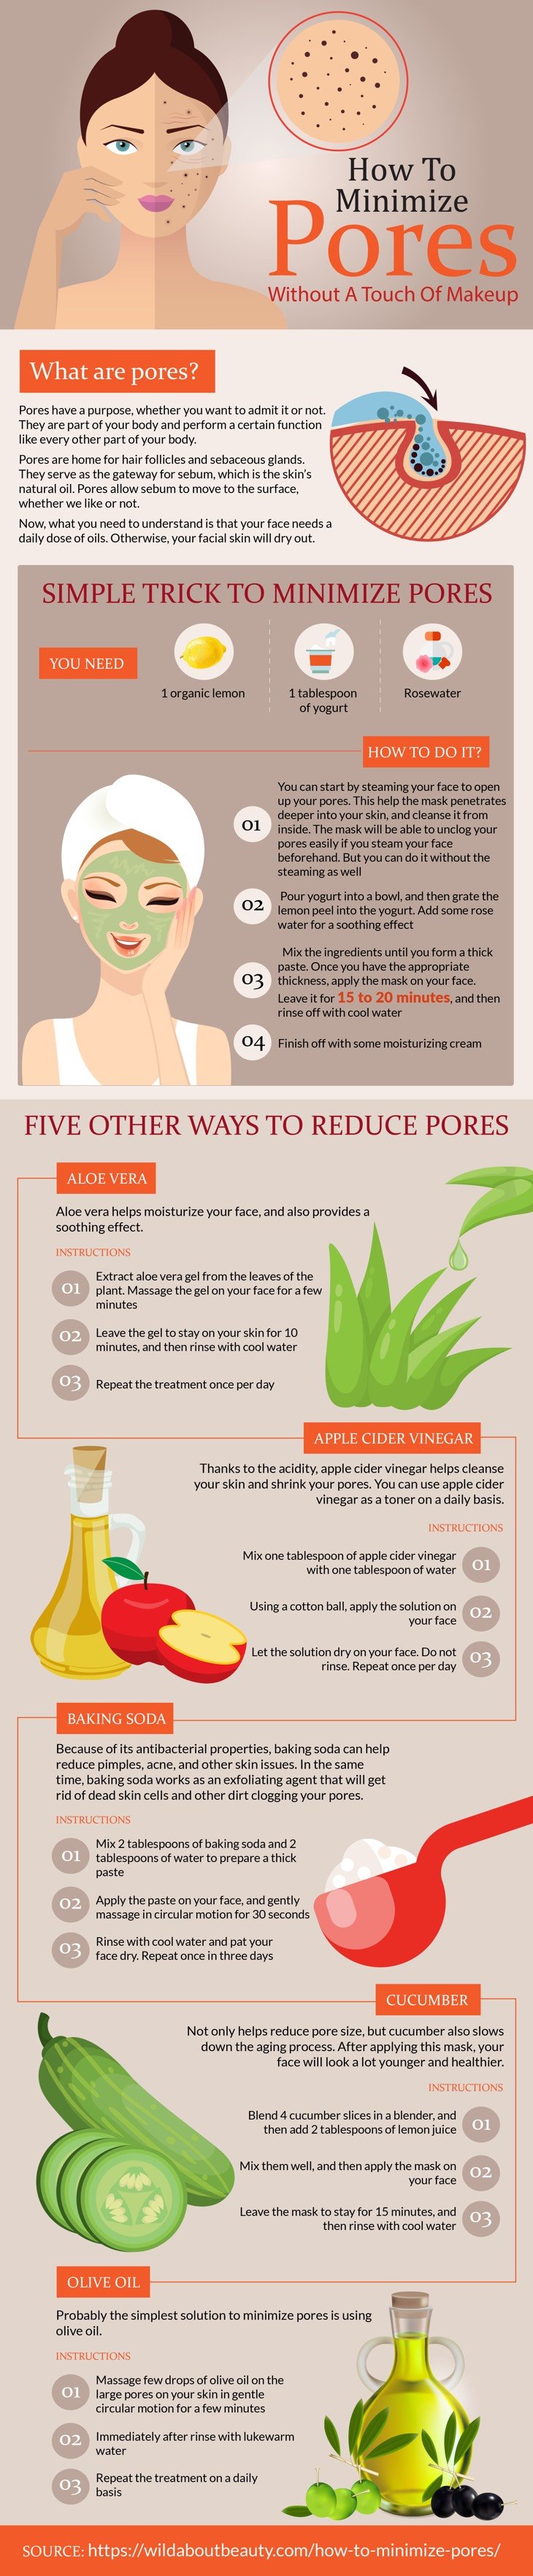 How to minimize pores